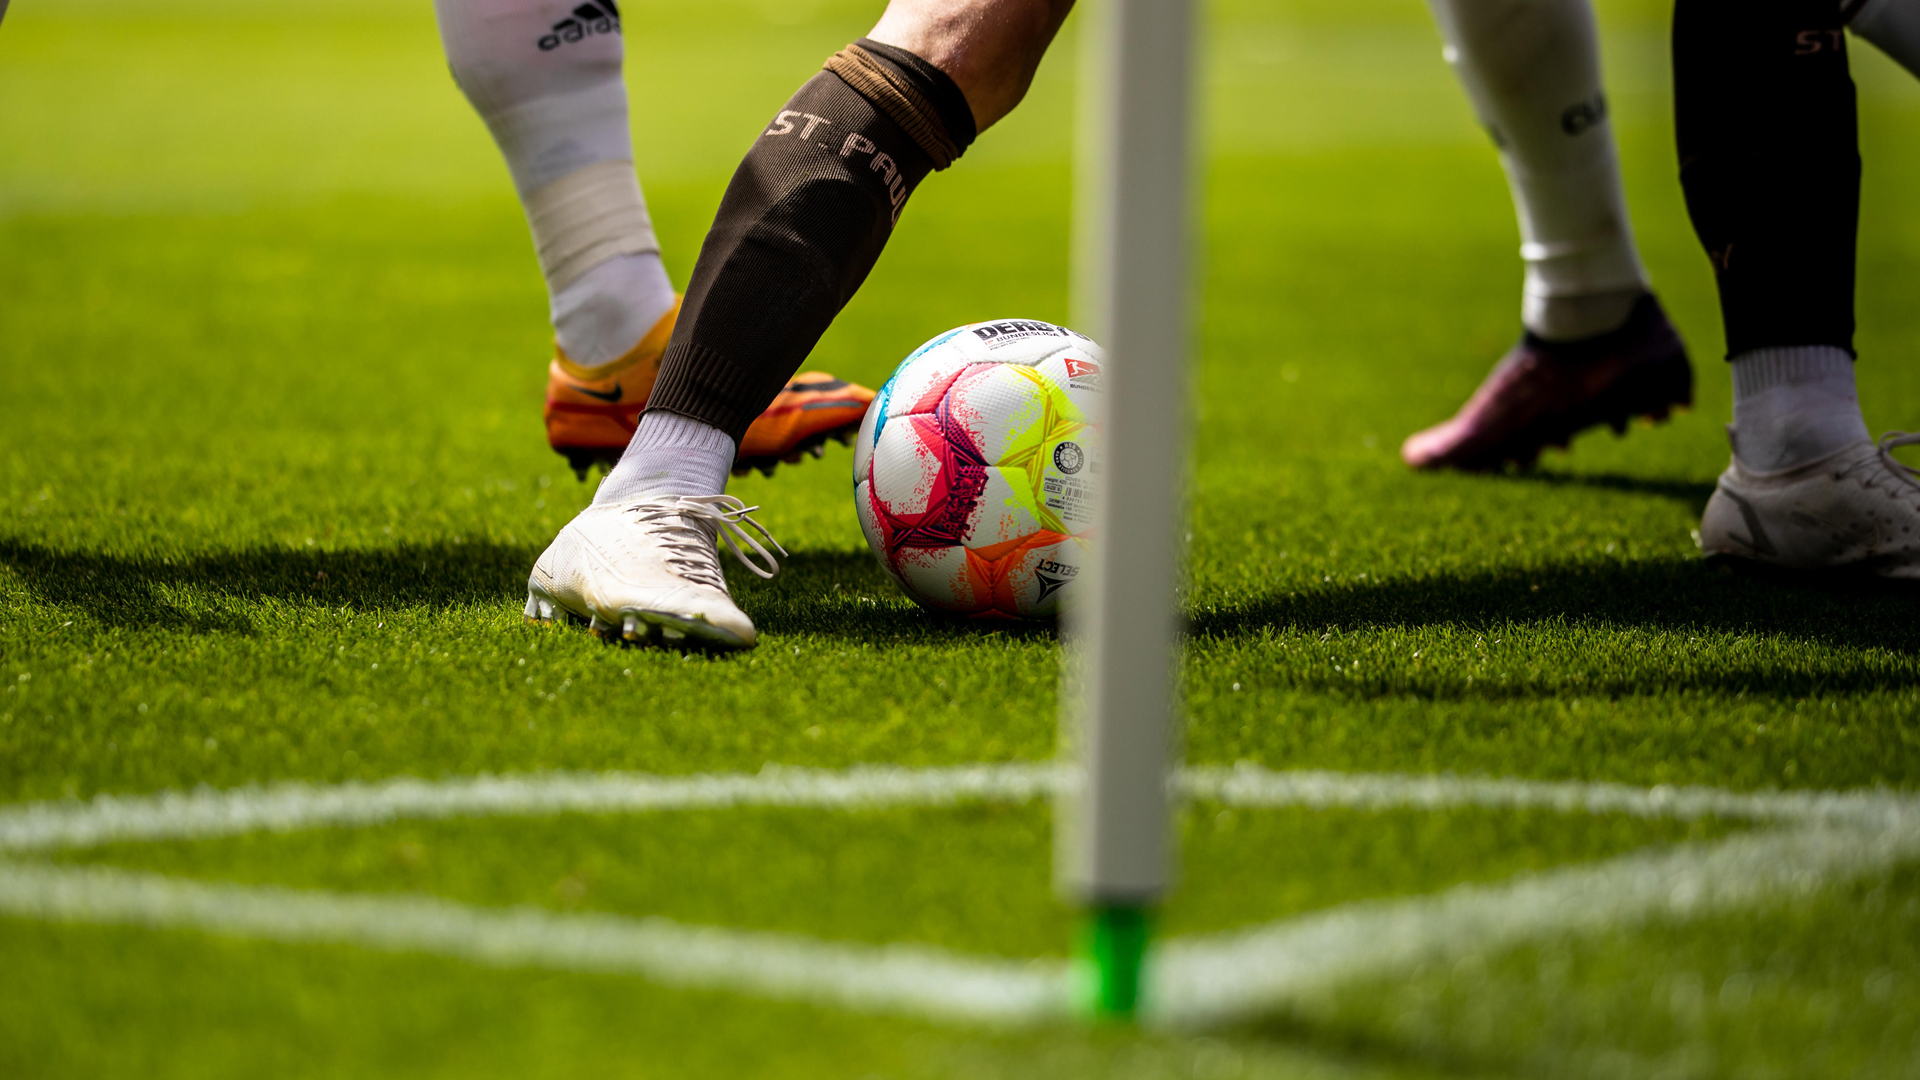 Fußball-Szene: Beine von Spielern - einer mit dem St.Pauli-Logo auf dem Strumpf | picture alliance / xim.gs